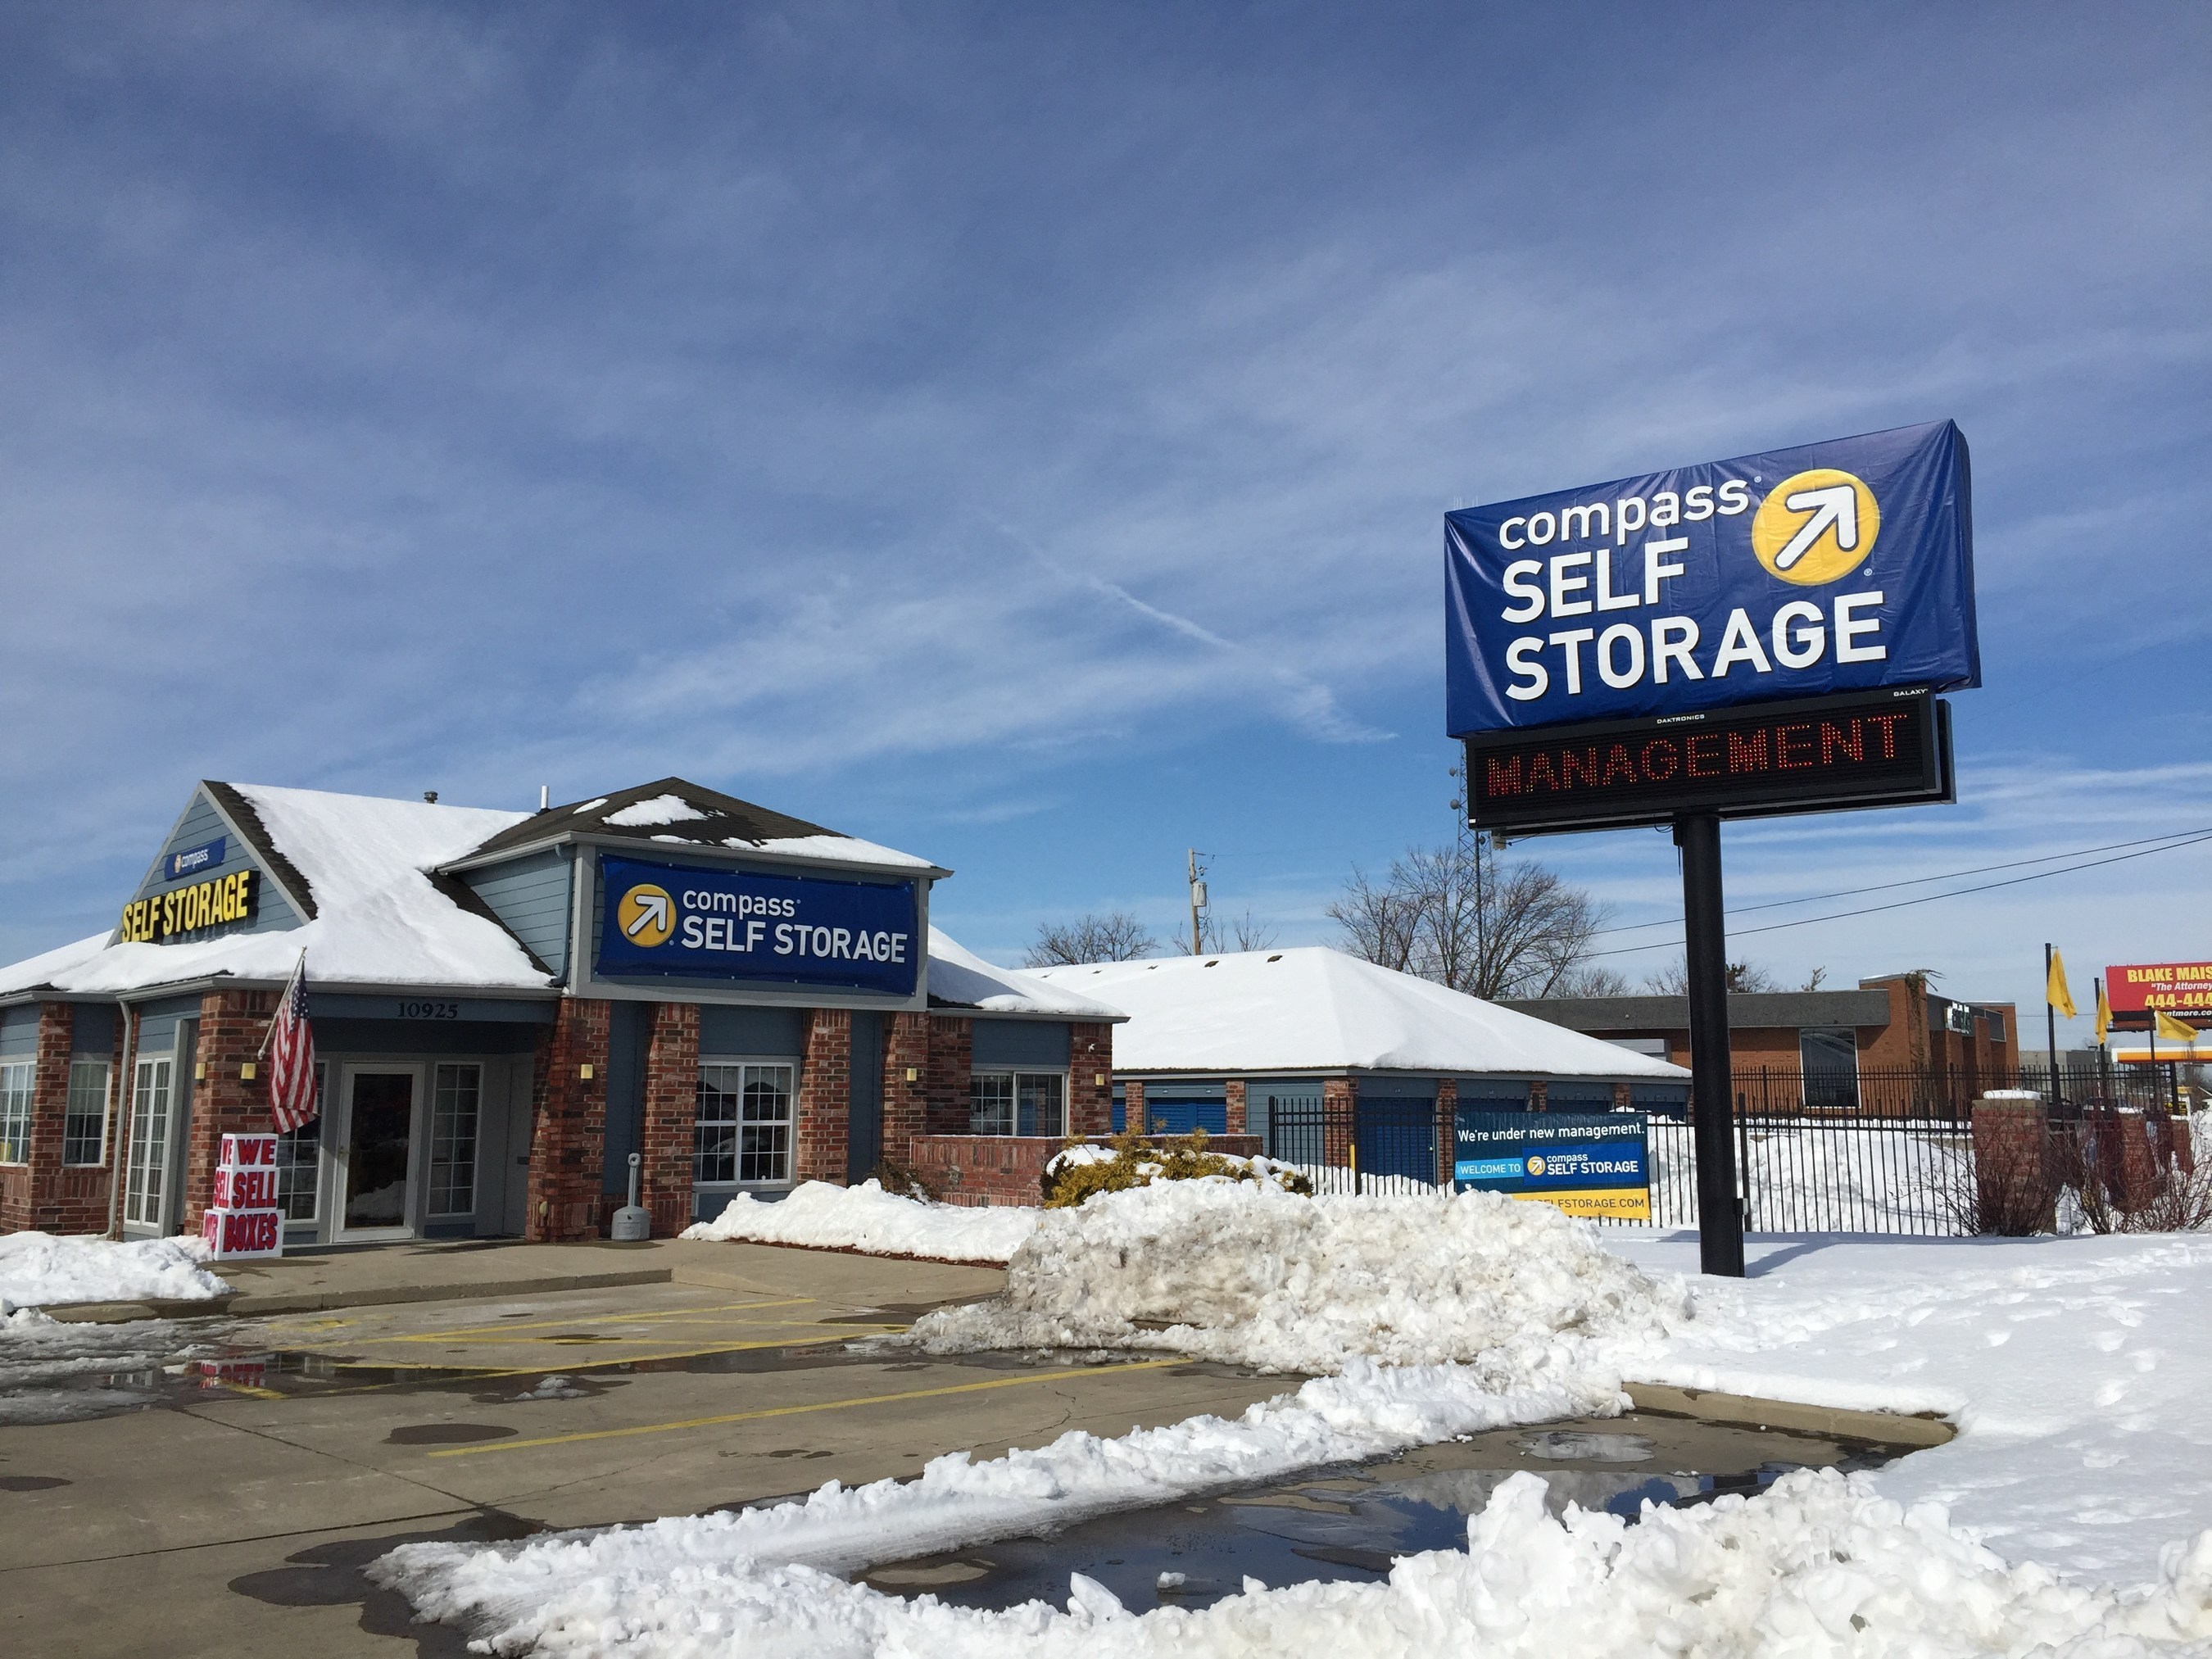 Compass Self Storage Acquires Self Storage Center on Hamilton Avenue in Cincinnati, OH